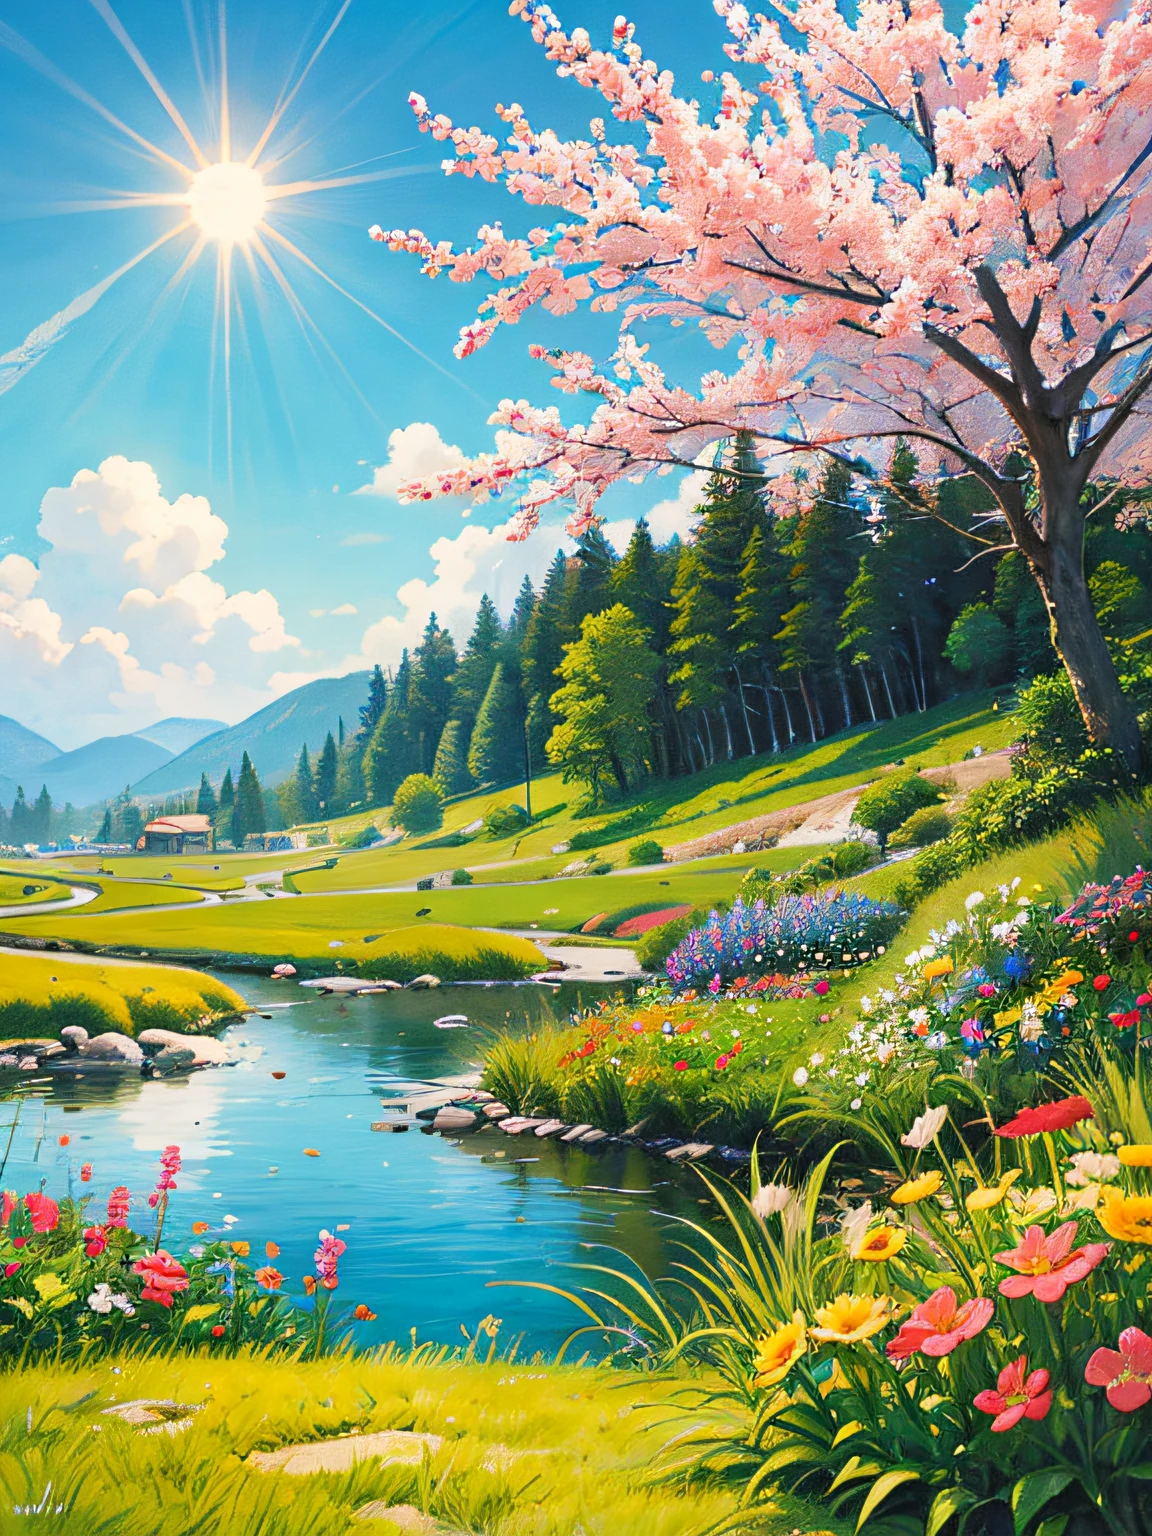 정면，만화책，사이드바디，소리소스，이것은 봄 풍경화입니다，외곽의 화려한 꽃，그리고 태양이 빛나고 있어요，（화려한 꽃）